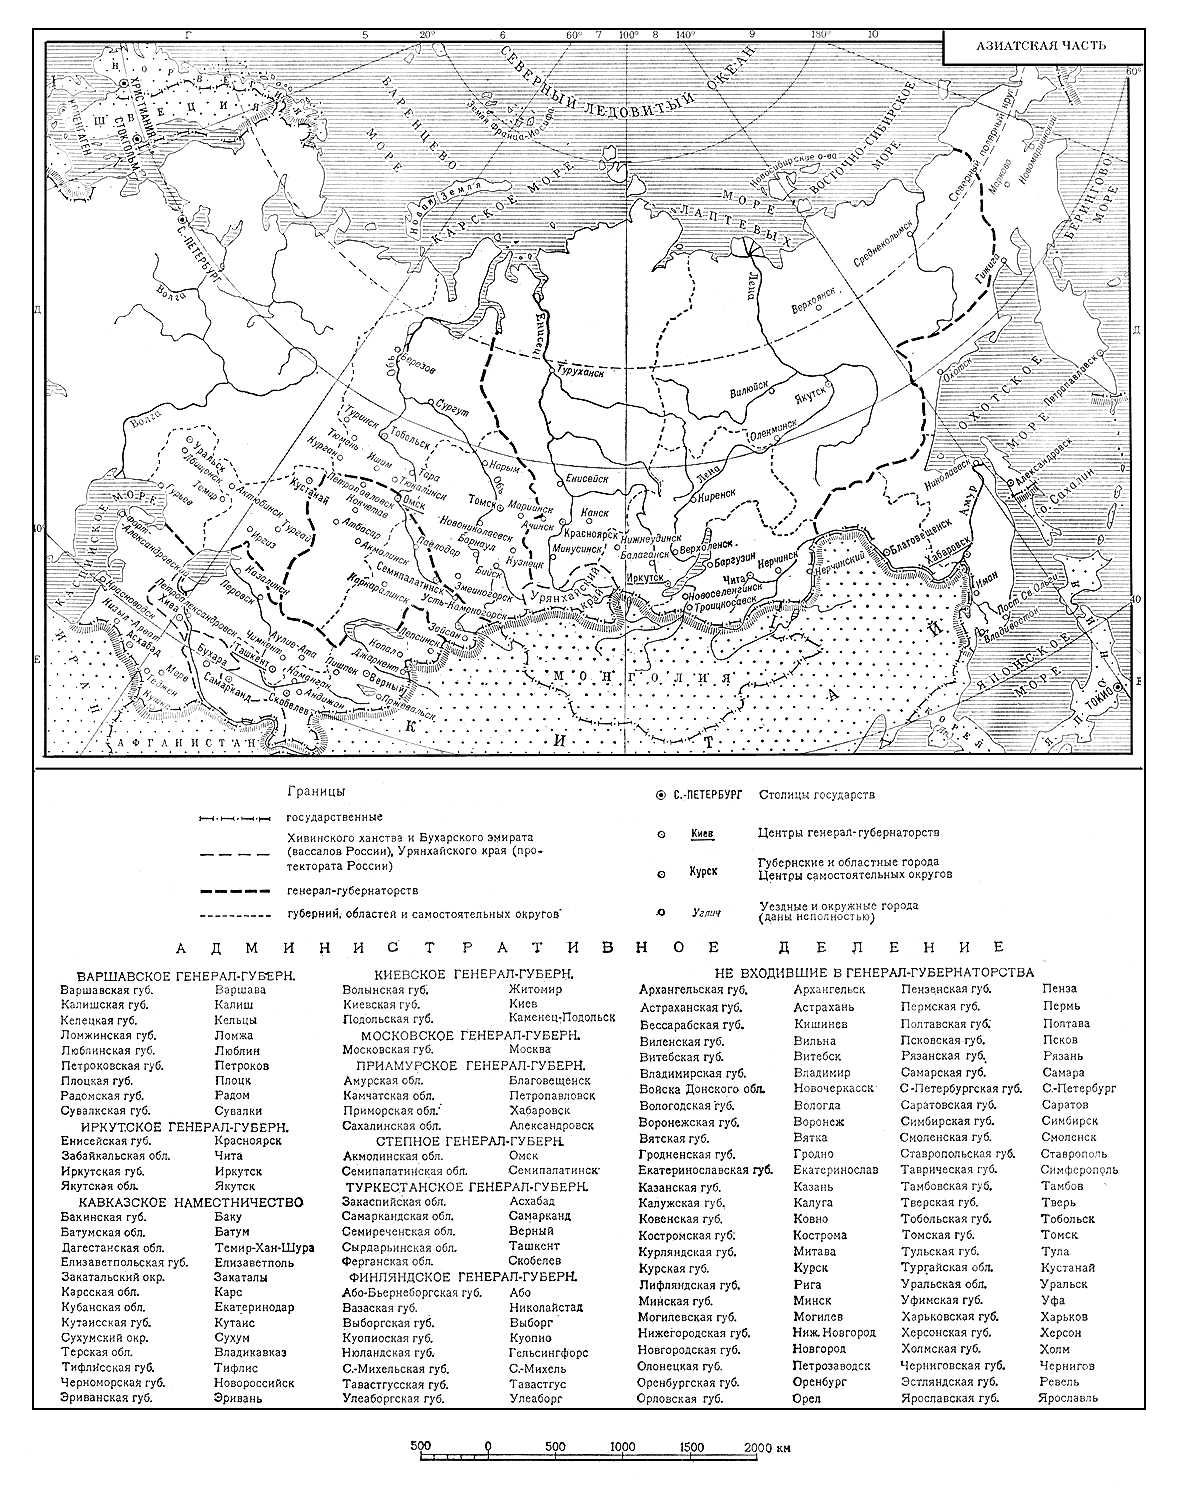 Политико-административная карта Азиатской части Российской империи (на 1914 г.)